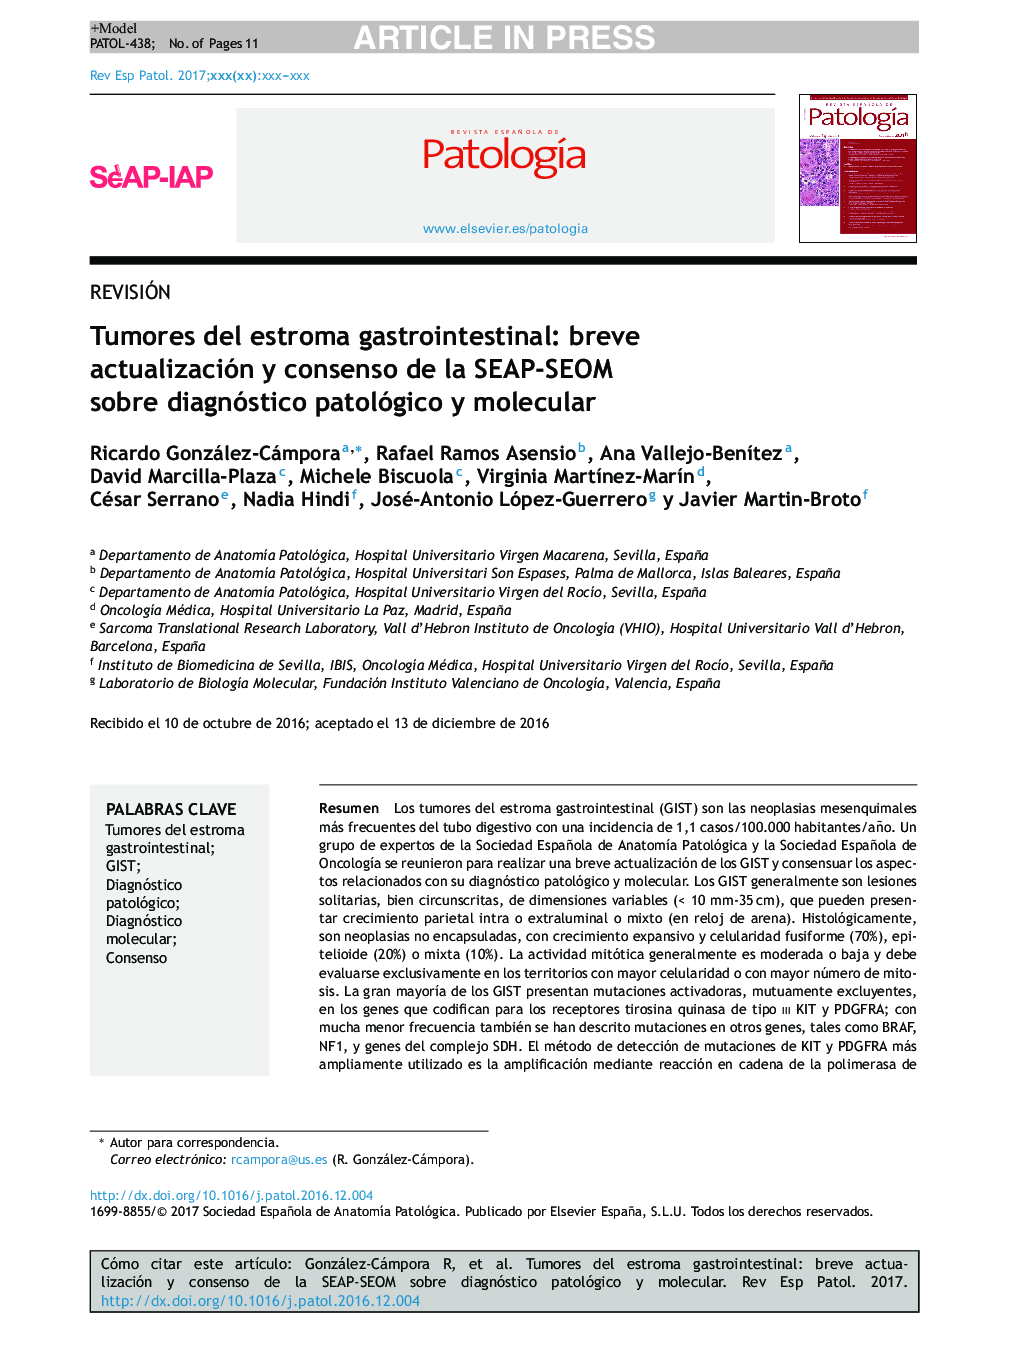 Tumores del estroma gastrointestinal: breve actualización y consenso de la SEAP-SEOM sobre diagnóstico patológico y molecular